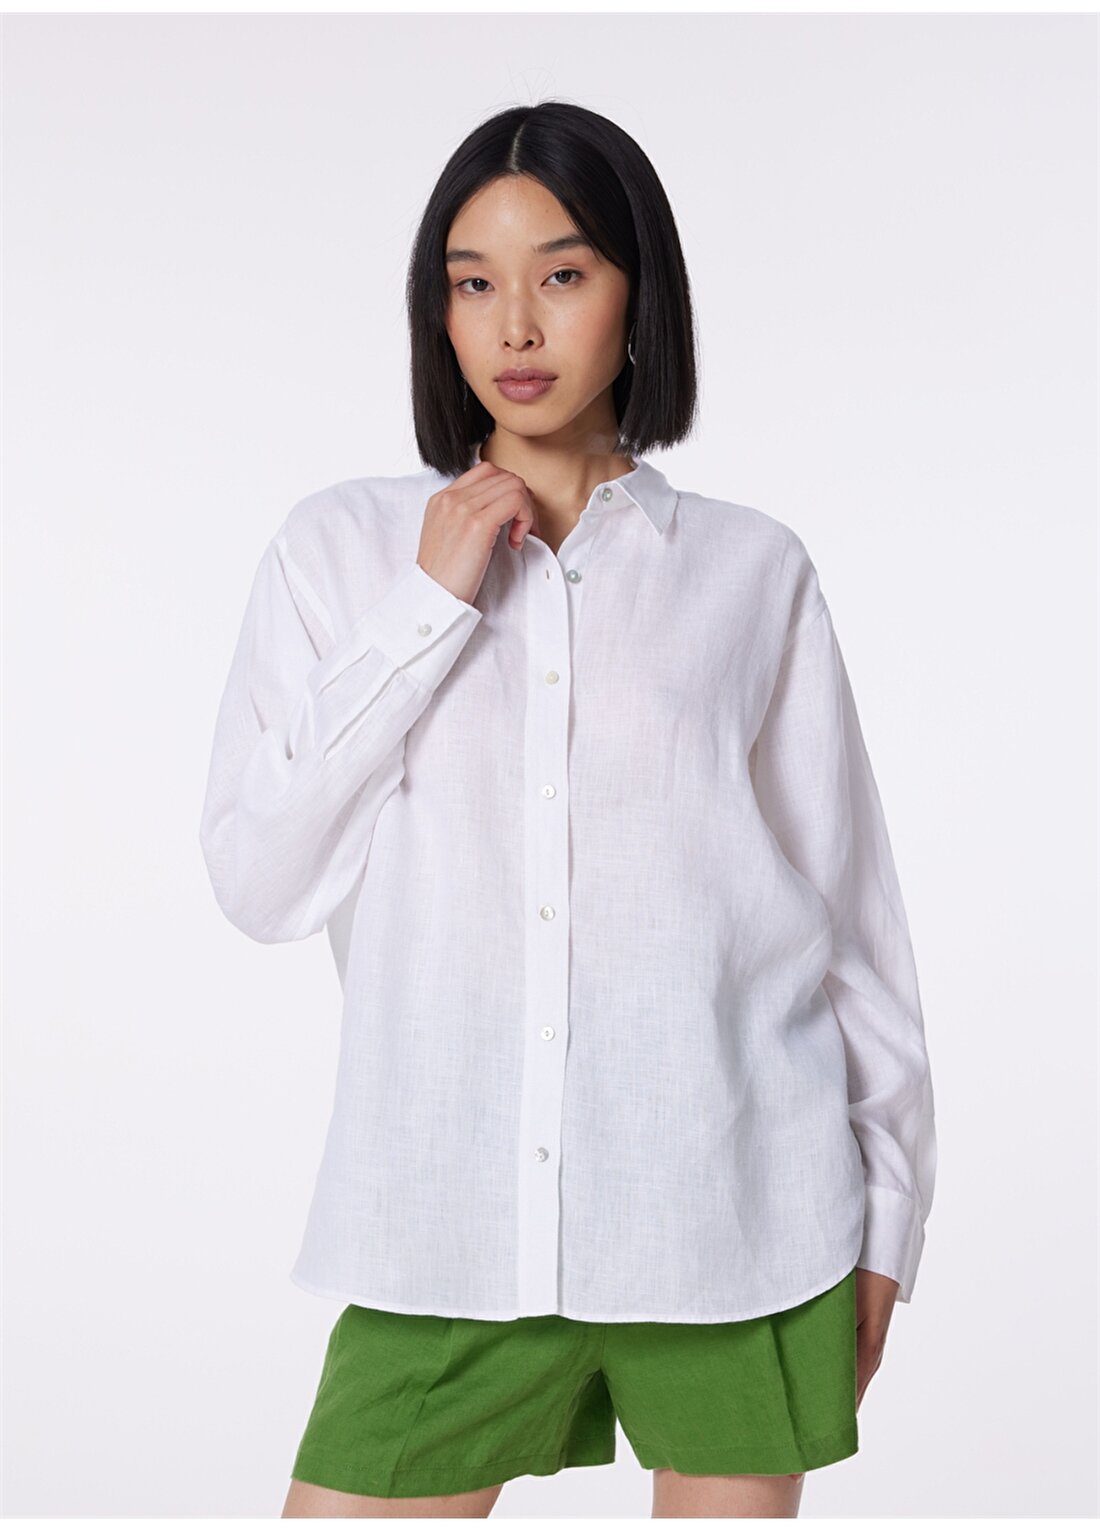 Mavi Standart Gömlek Yaka Beyaz Kadın Gömlek M1210747-620-UZUN KOLLU GÖMLEK